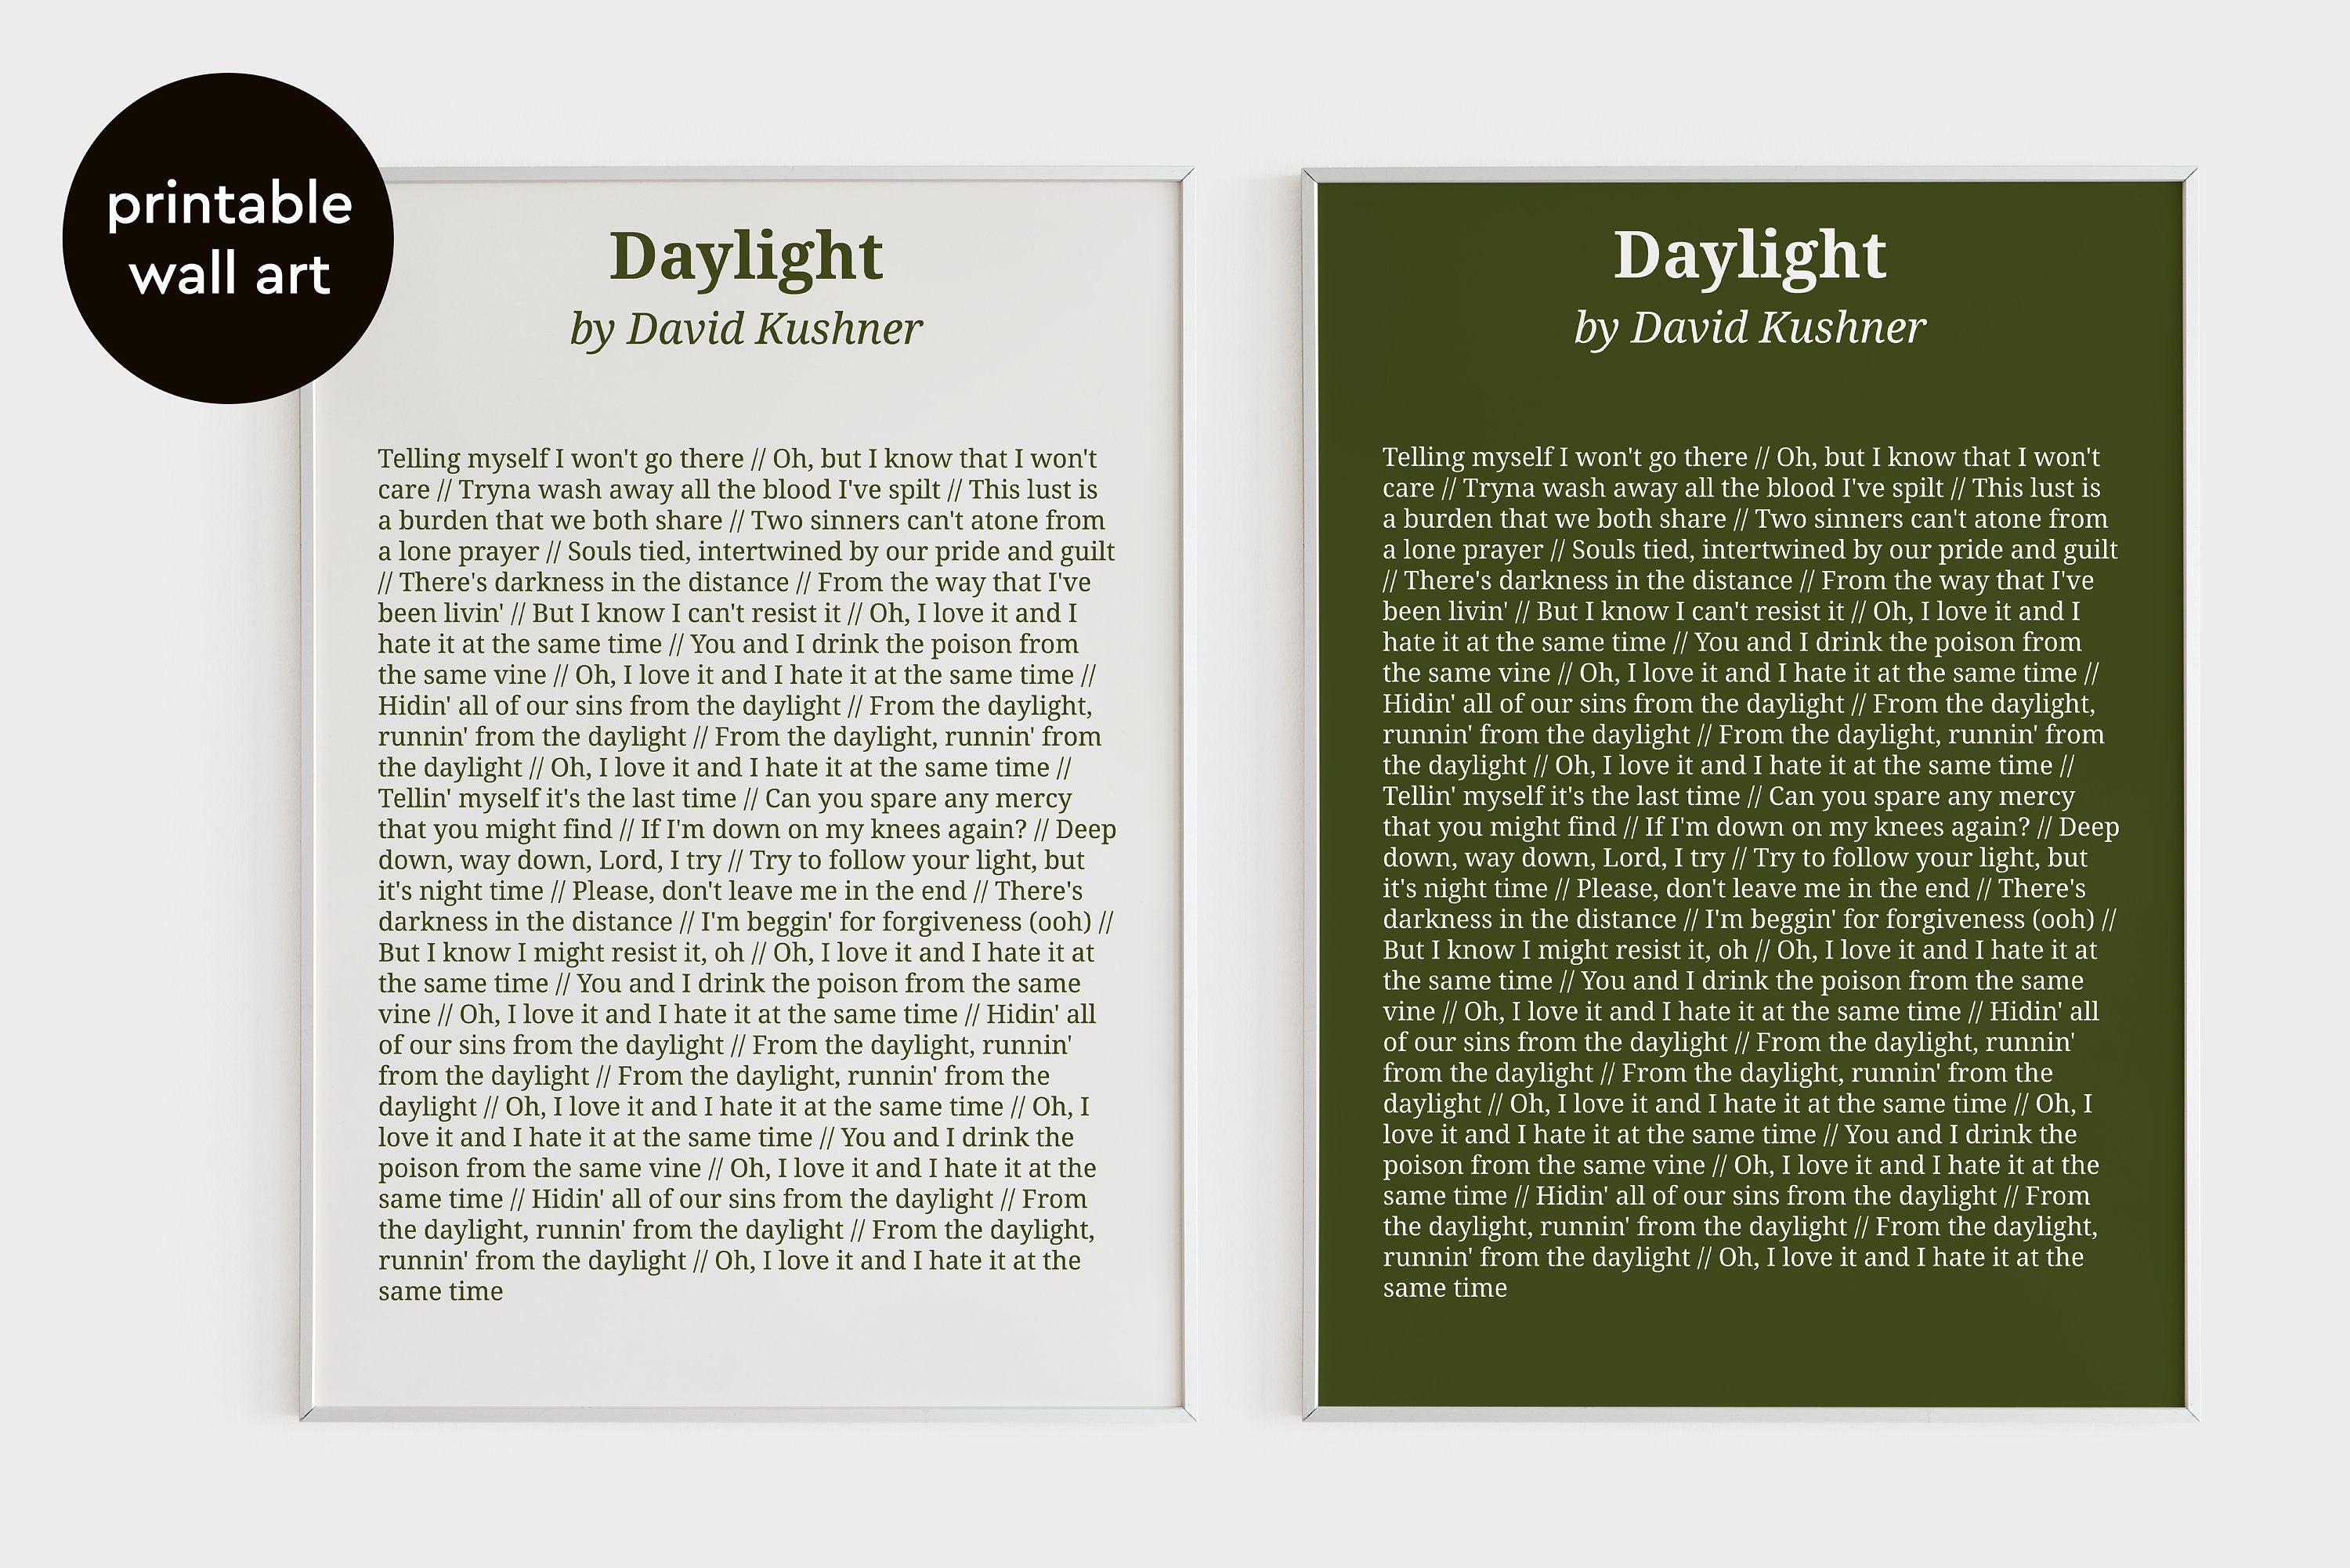 David Kushner - Daylight (Lyrics) 